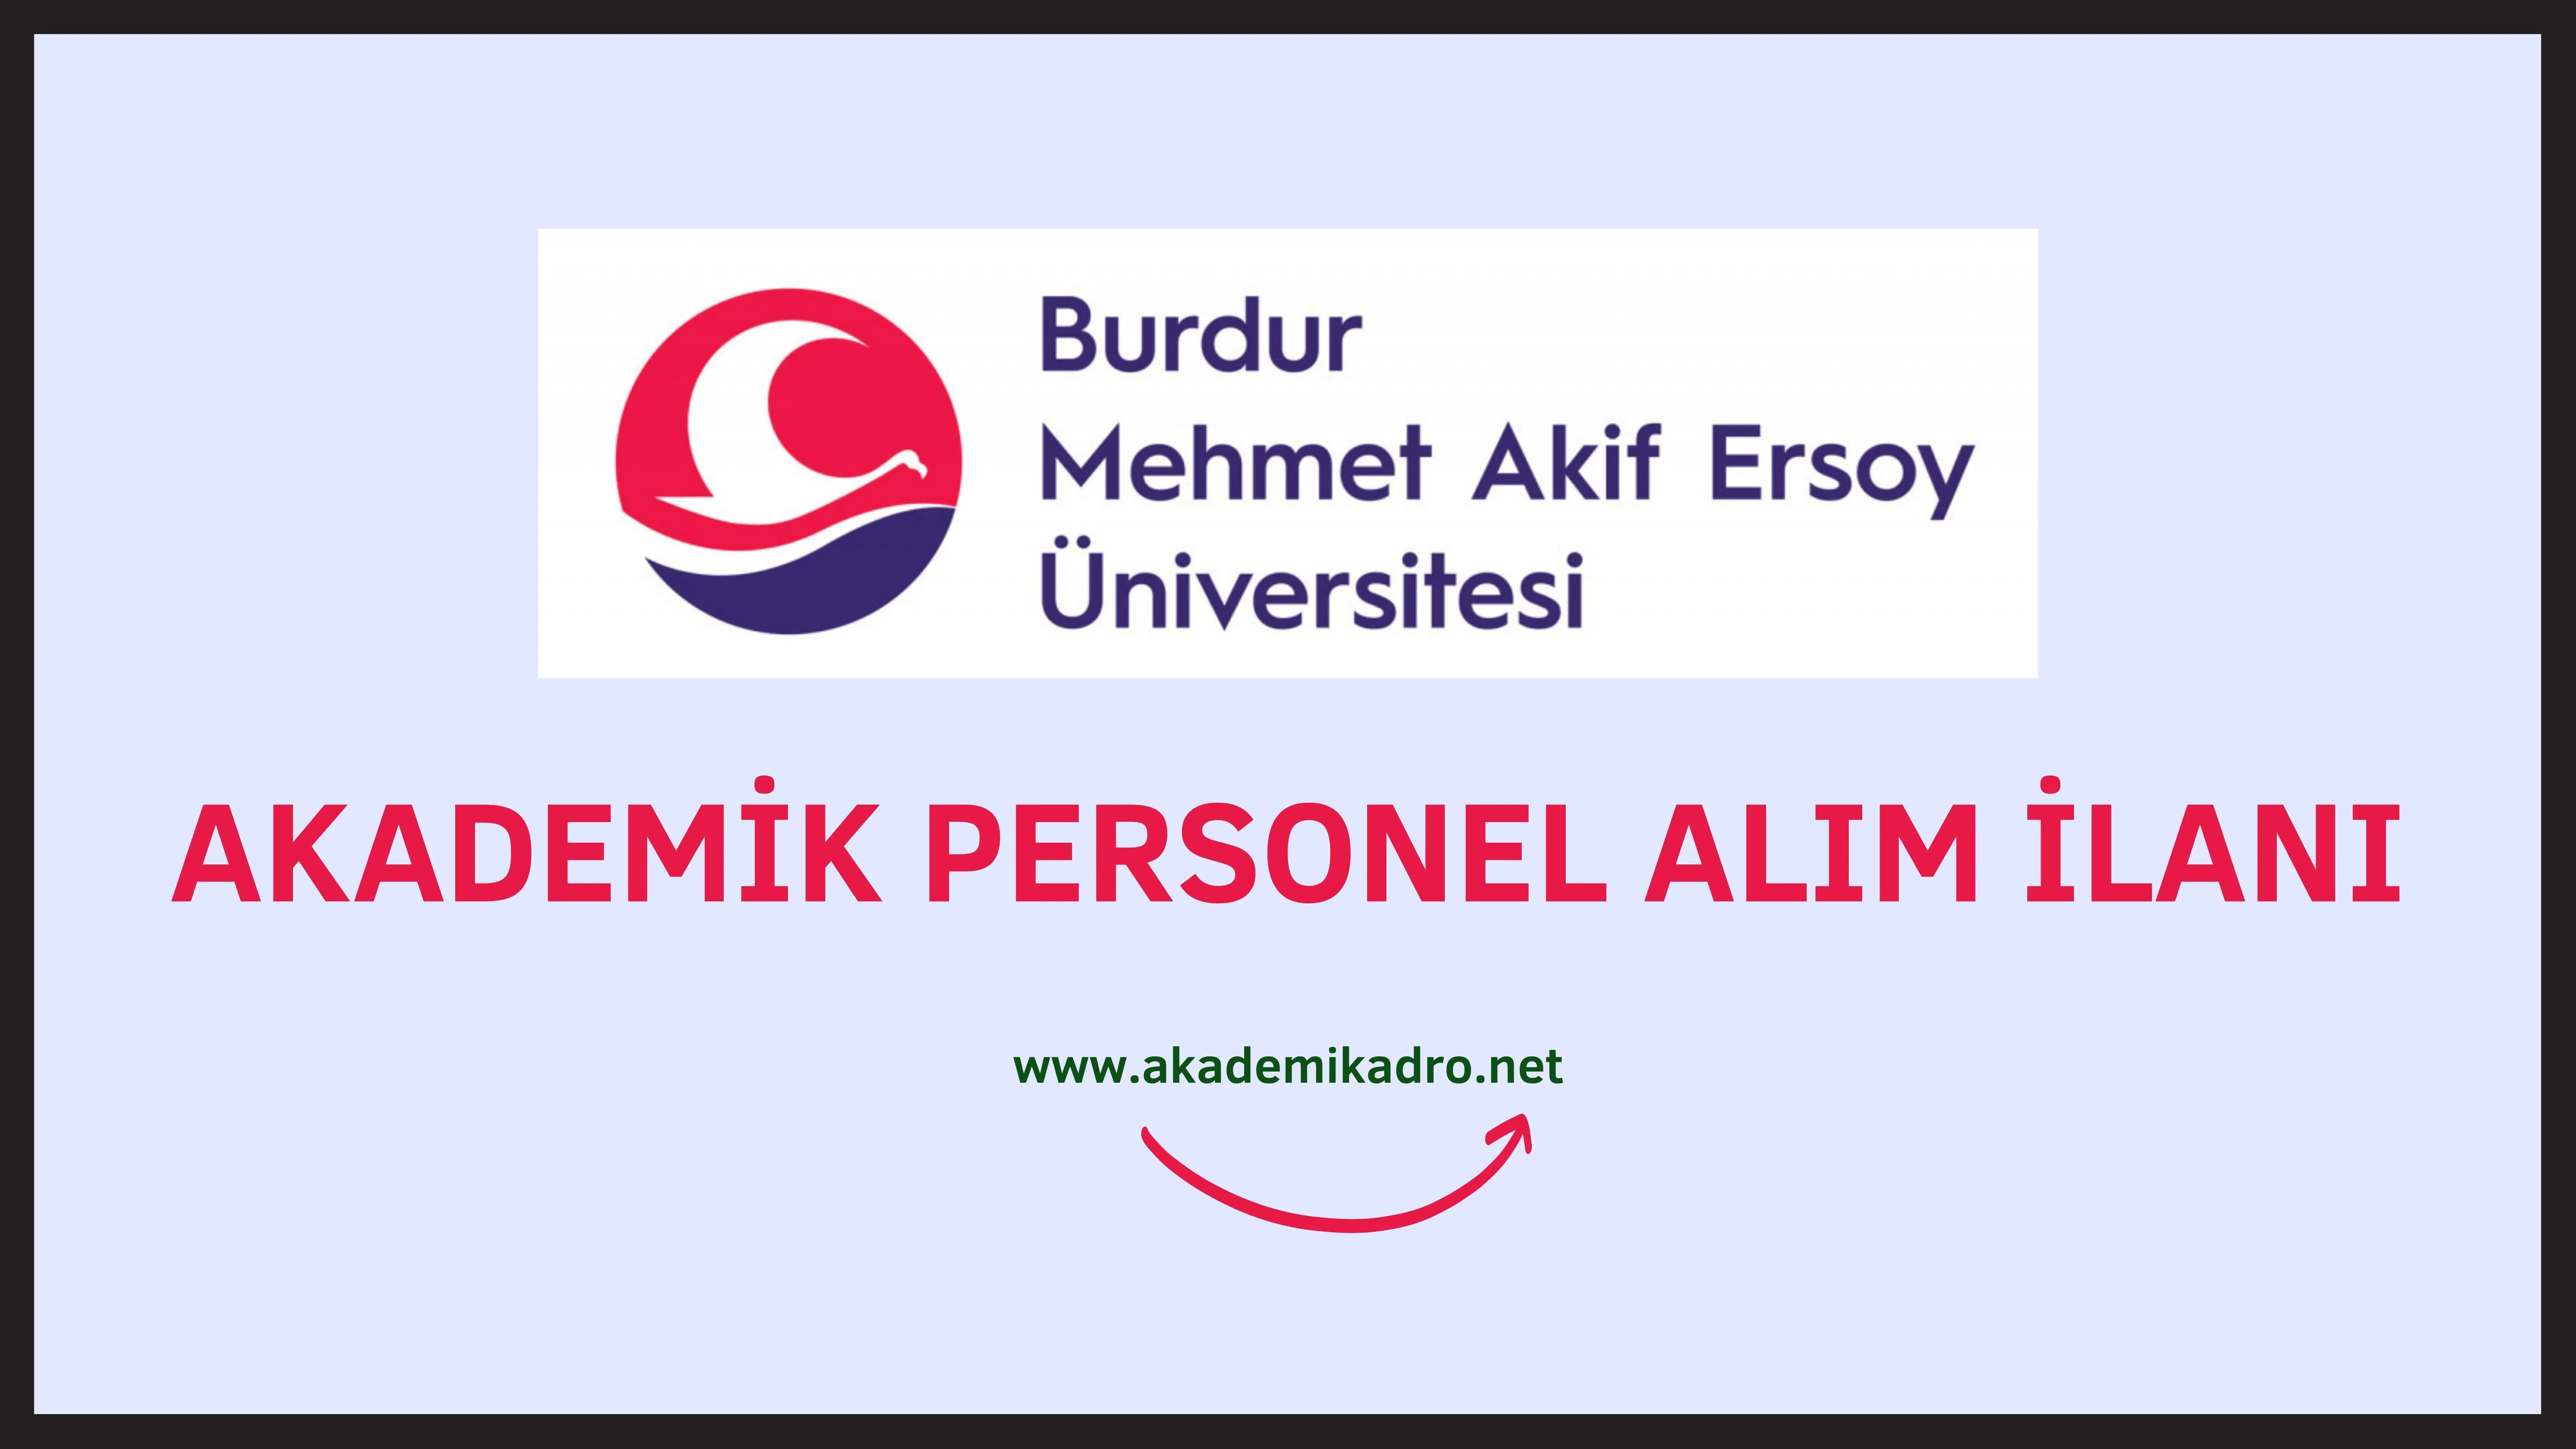 Burdur Mehmet Akif Ersoy Üniversitesi birçok alandan 44 akademik personel alacak.